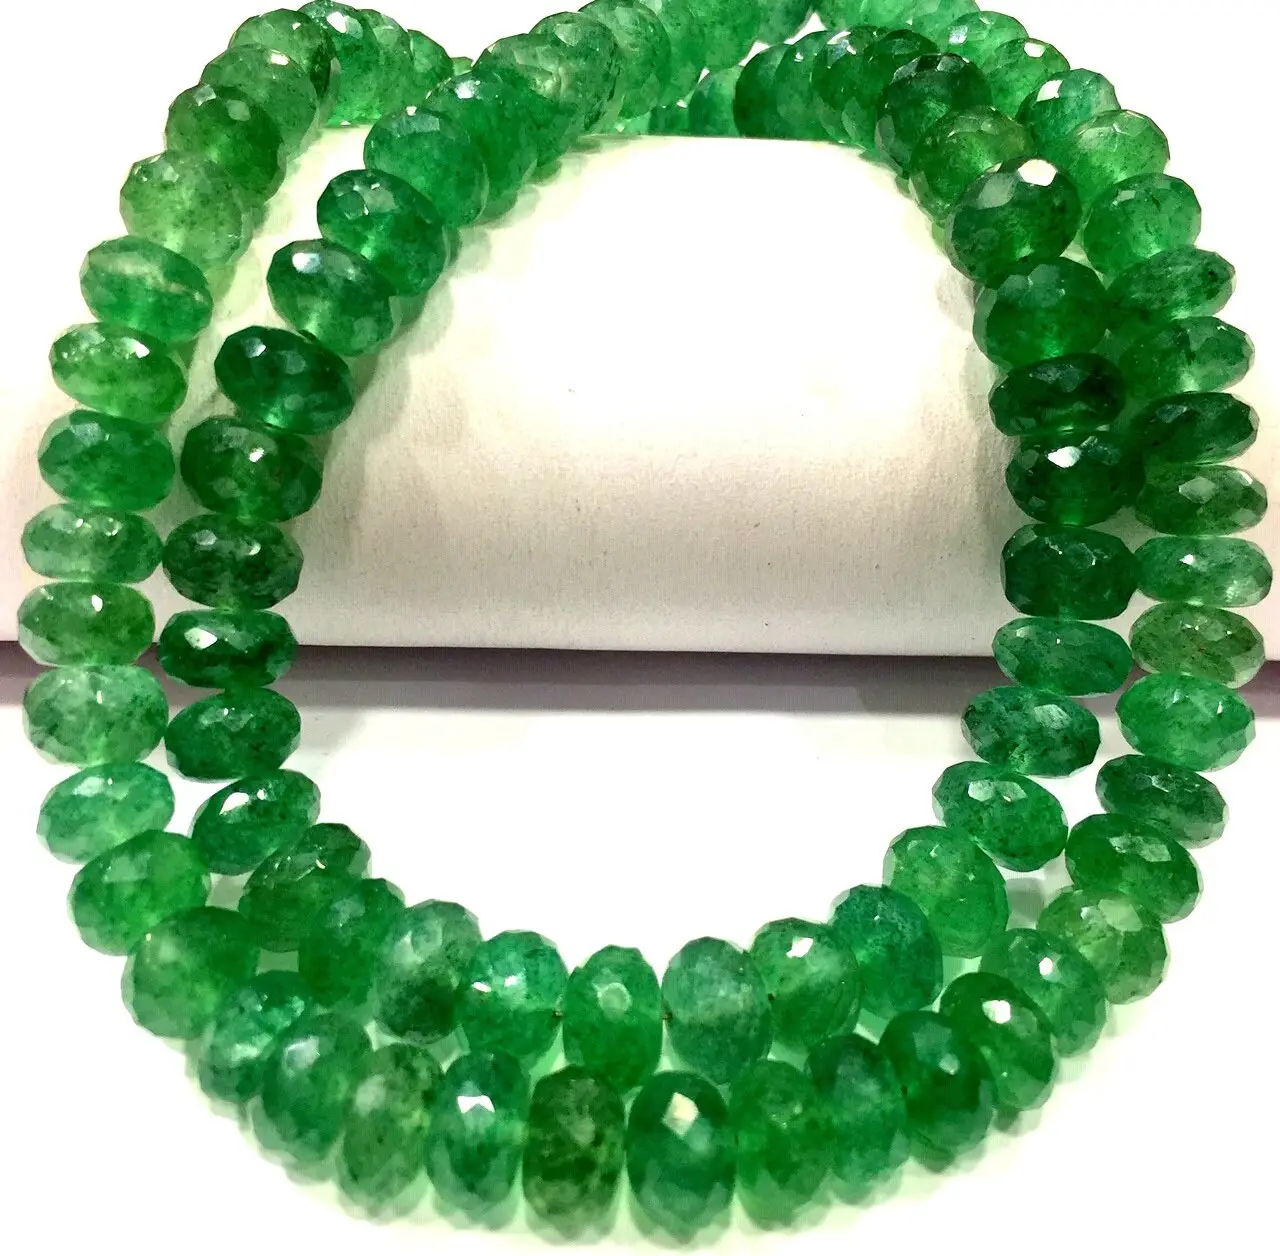 Extremadamente hermoso, raro laboratorio cultivado verde esmeralda suave Rondell Beads, cuentas de piedras preciosas verdaderamente hermosas, collar de hilo de cuentas verdes